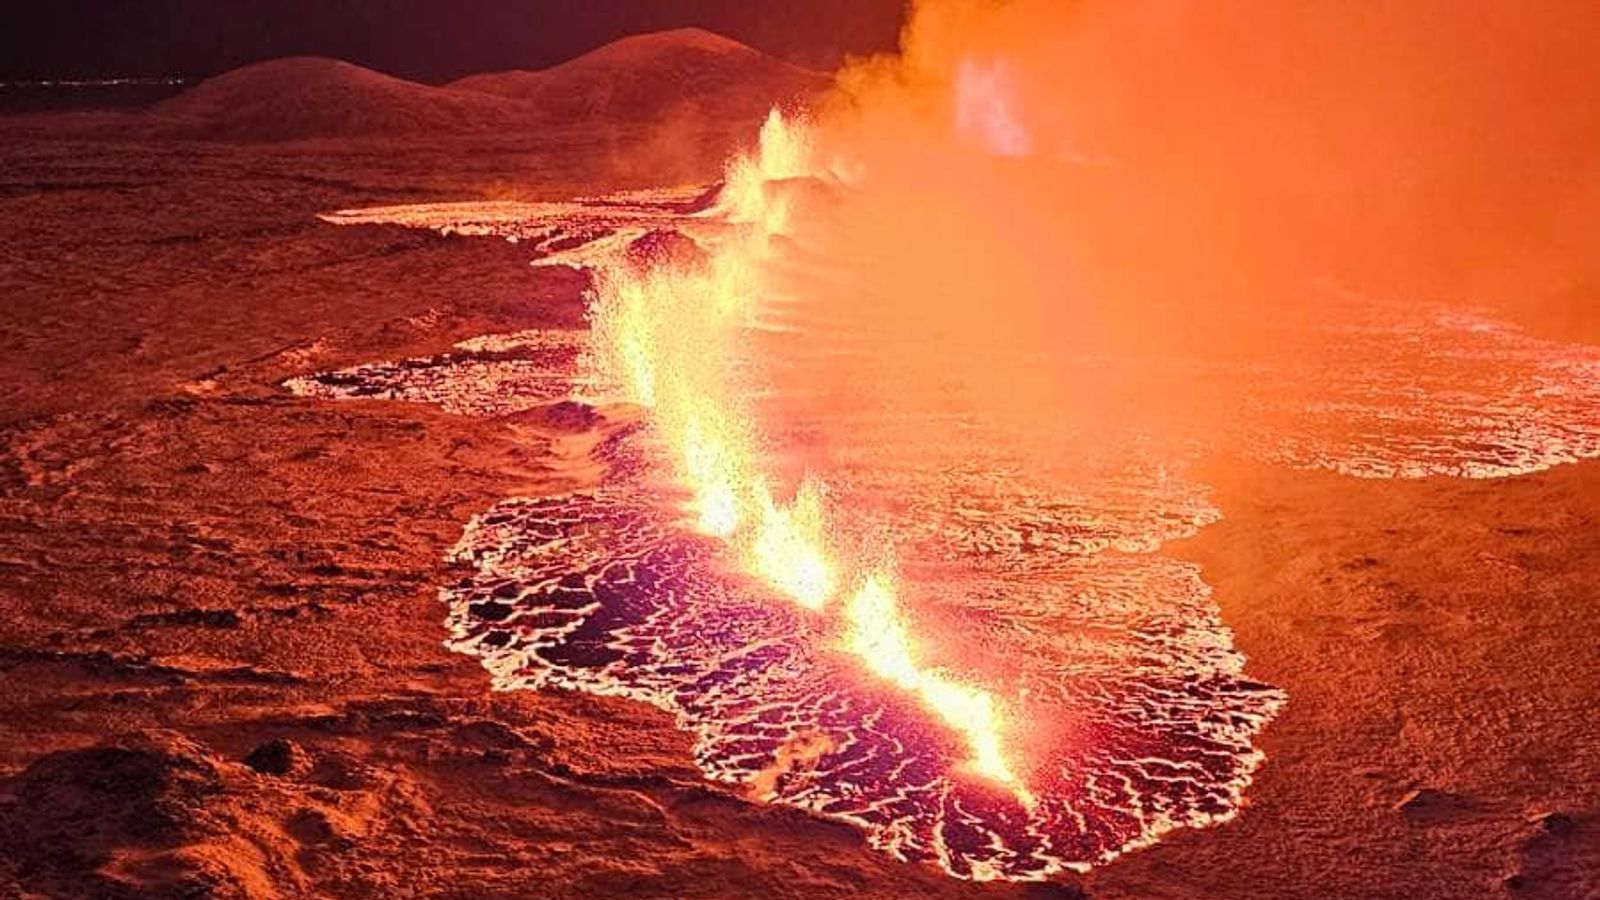 Вулкан в Исландия: Този вулканичен изблик може да не е краткотраен - и всичко, което може да се направи, е да оставим природата да поеме по своя път